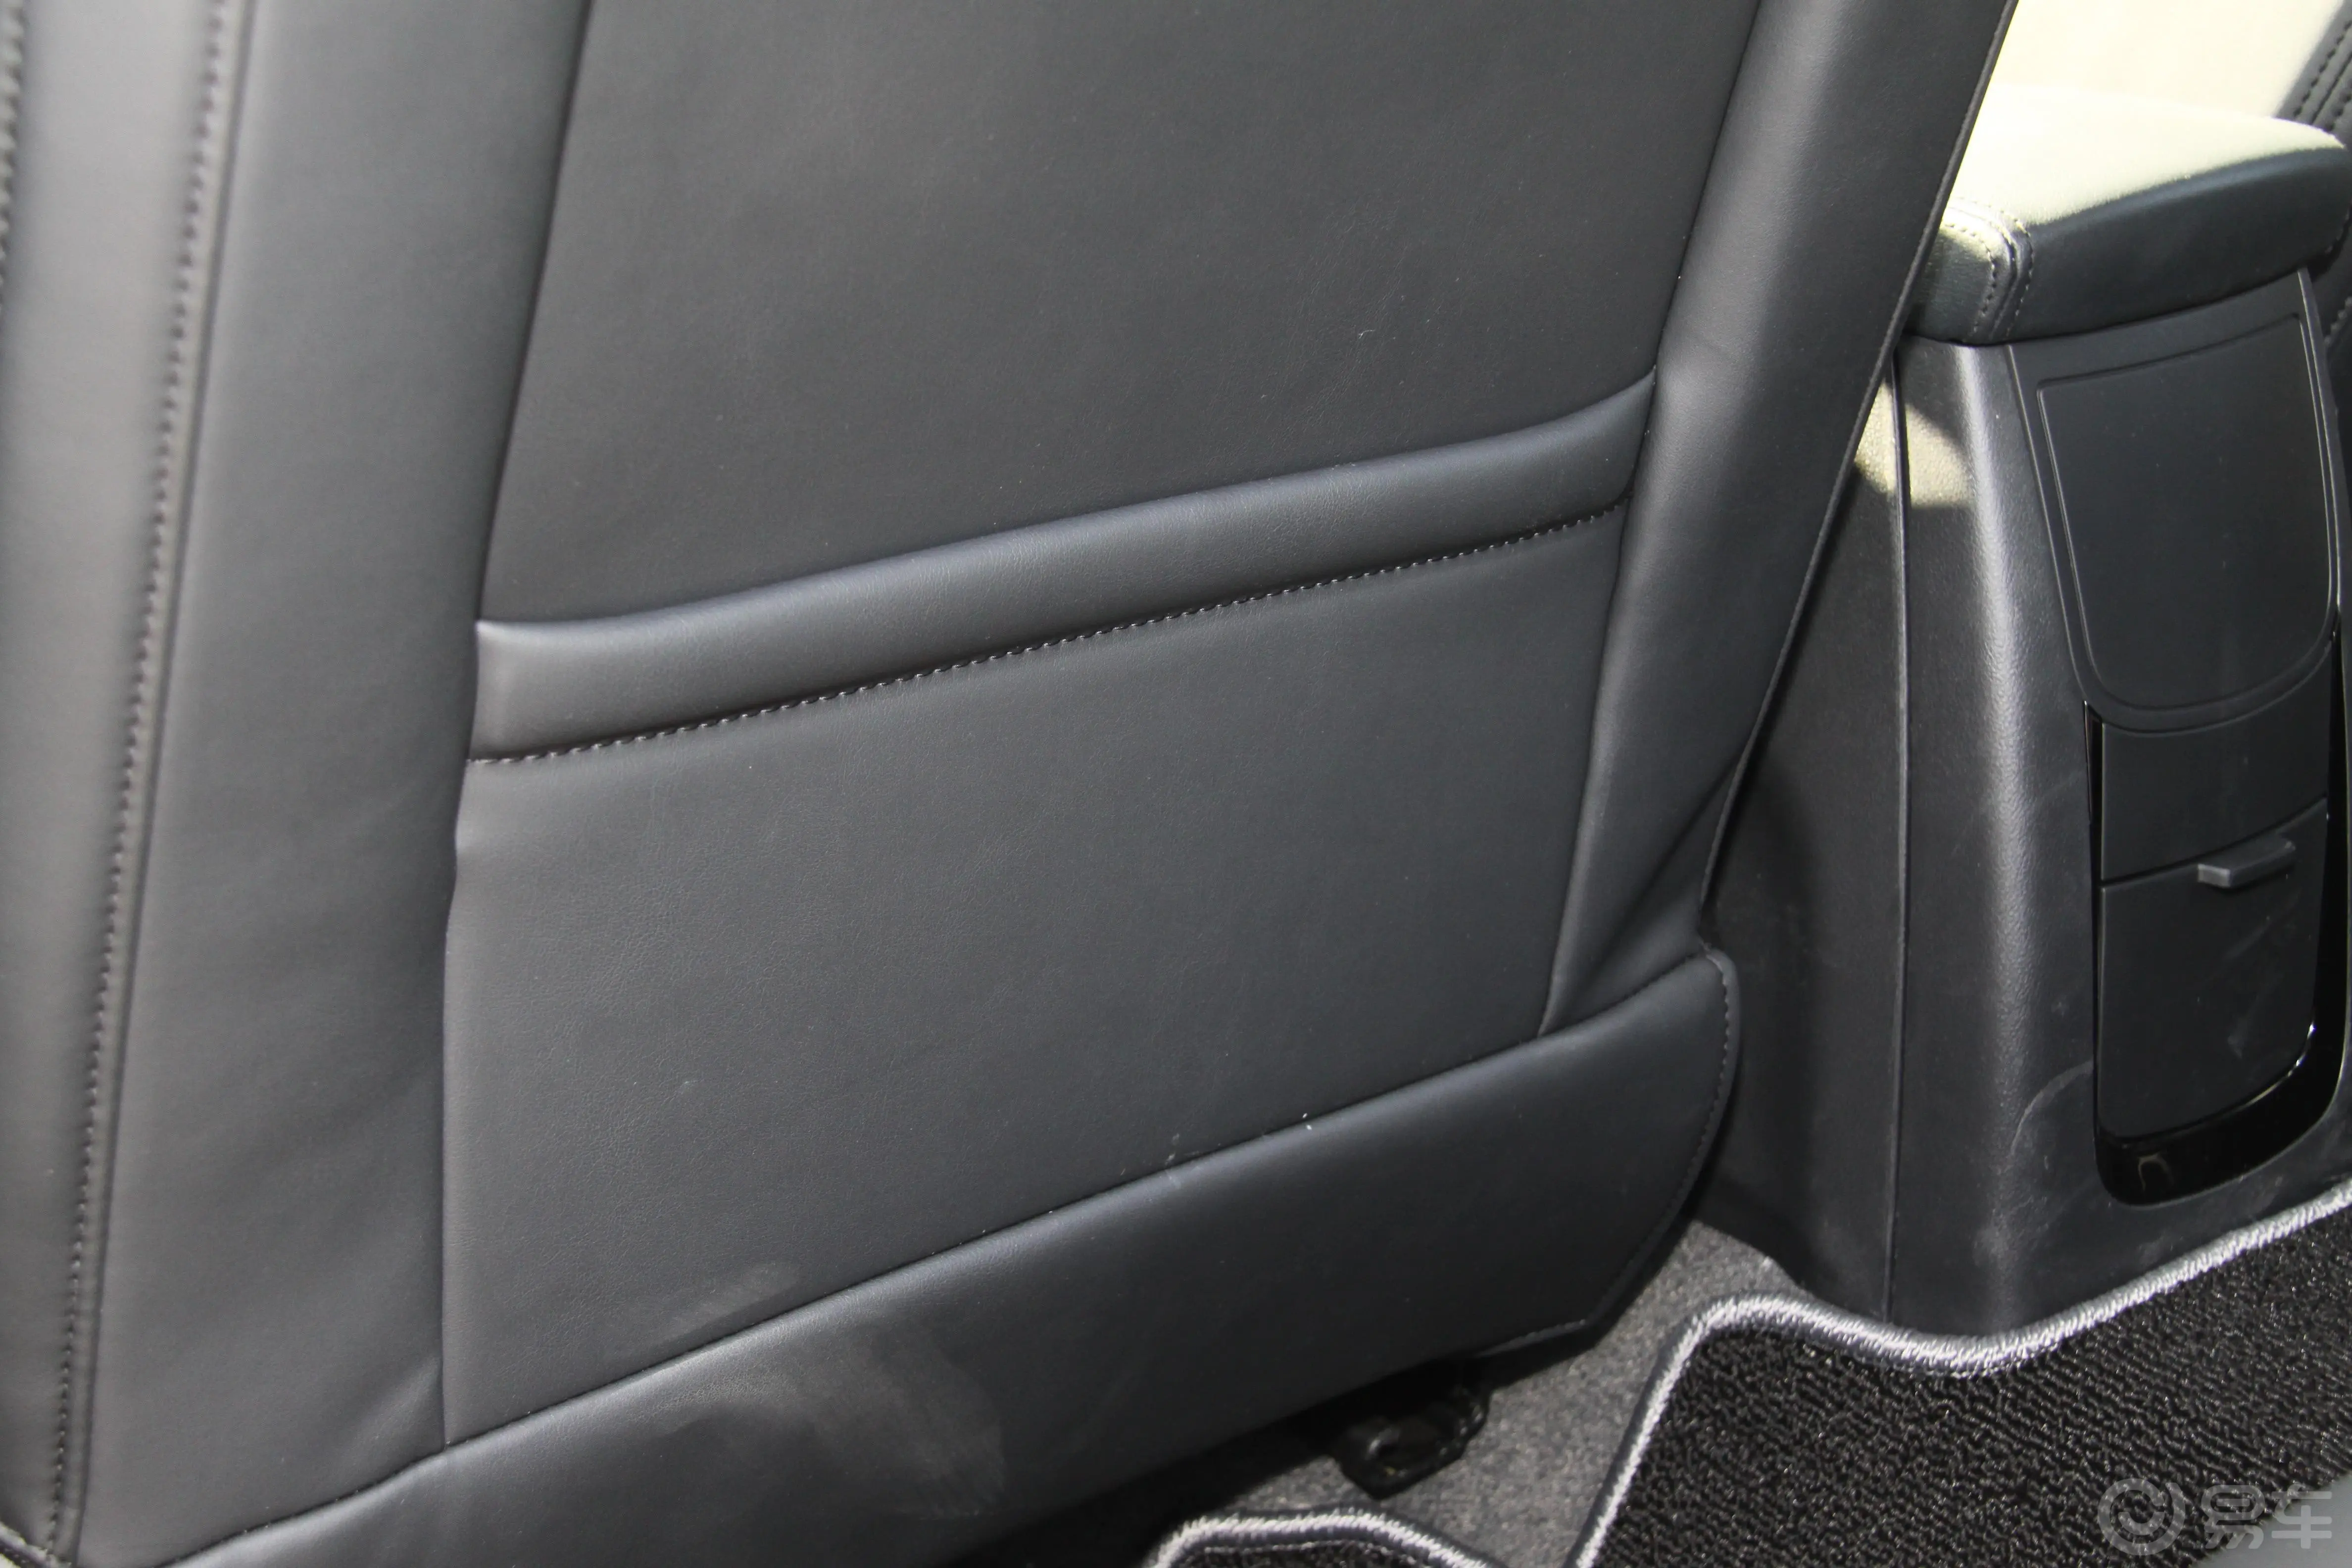 MG6掀背 1.8T 精英版前排座椅后储物袋